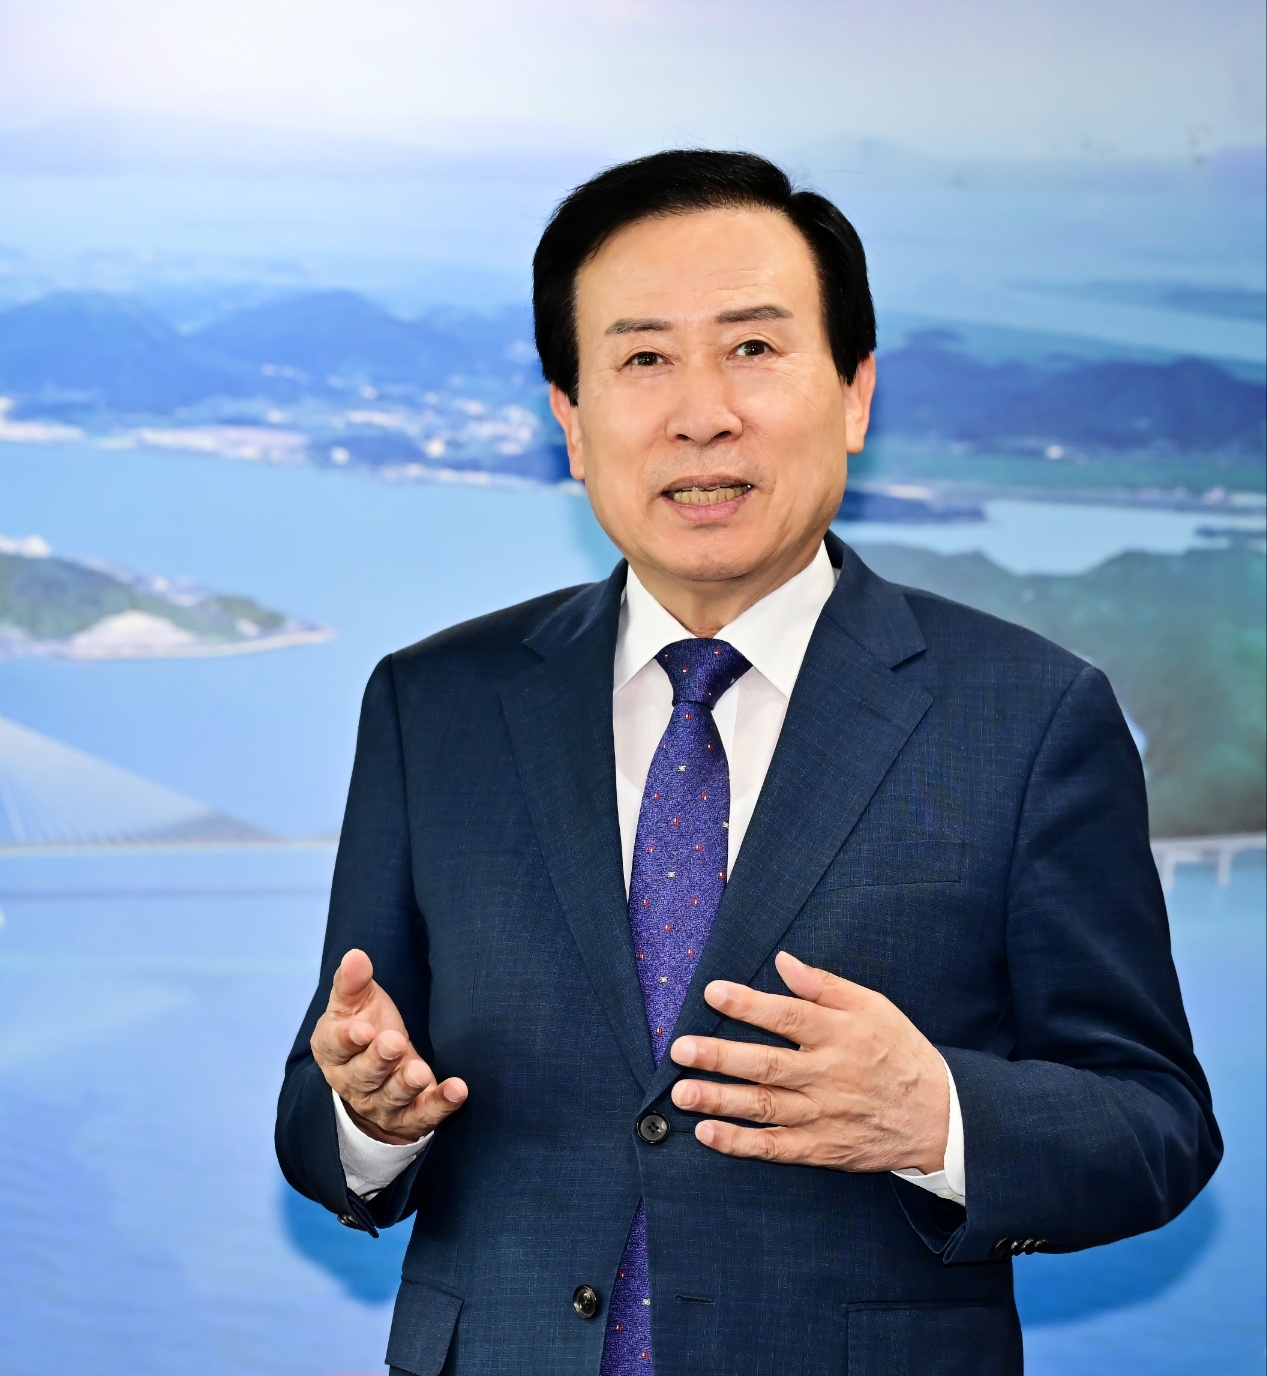 무소속 박홍률 목포시장, 제 22대 국회의원 선거구 획정관련 긴급 호소